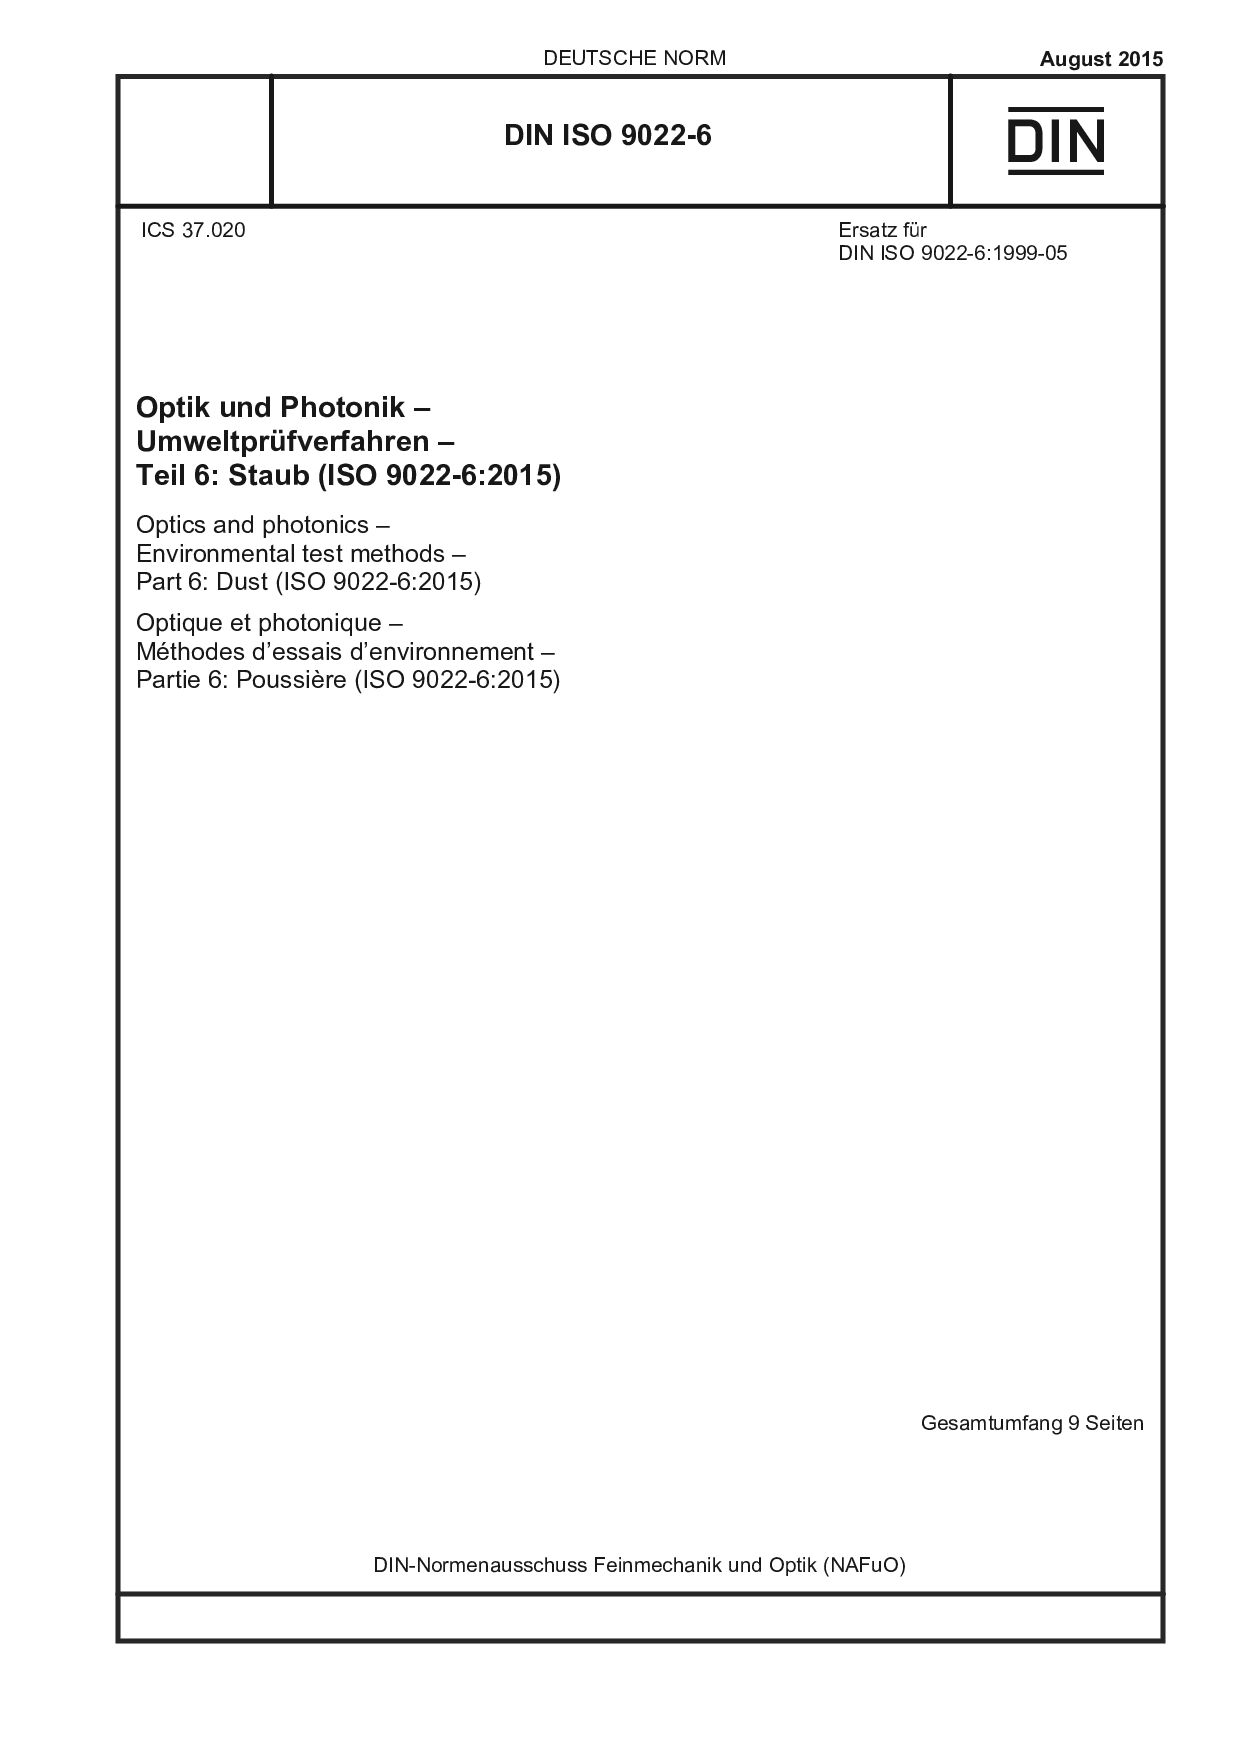 DIN ISO 9022-6:2015封面图